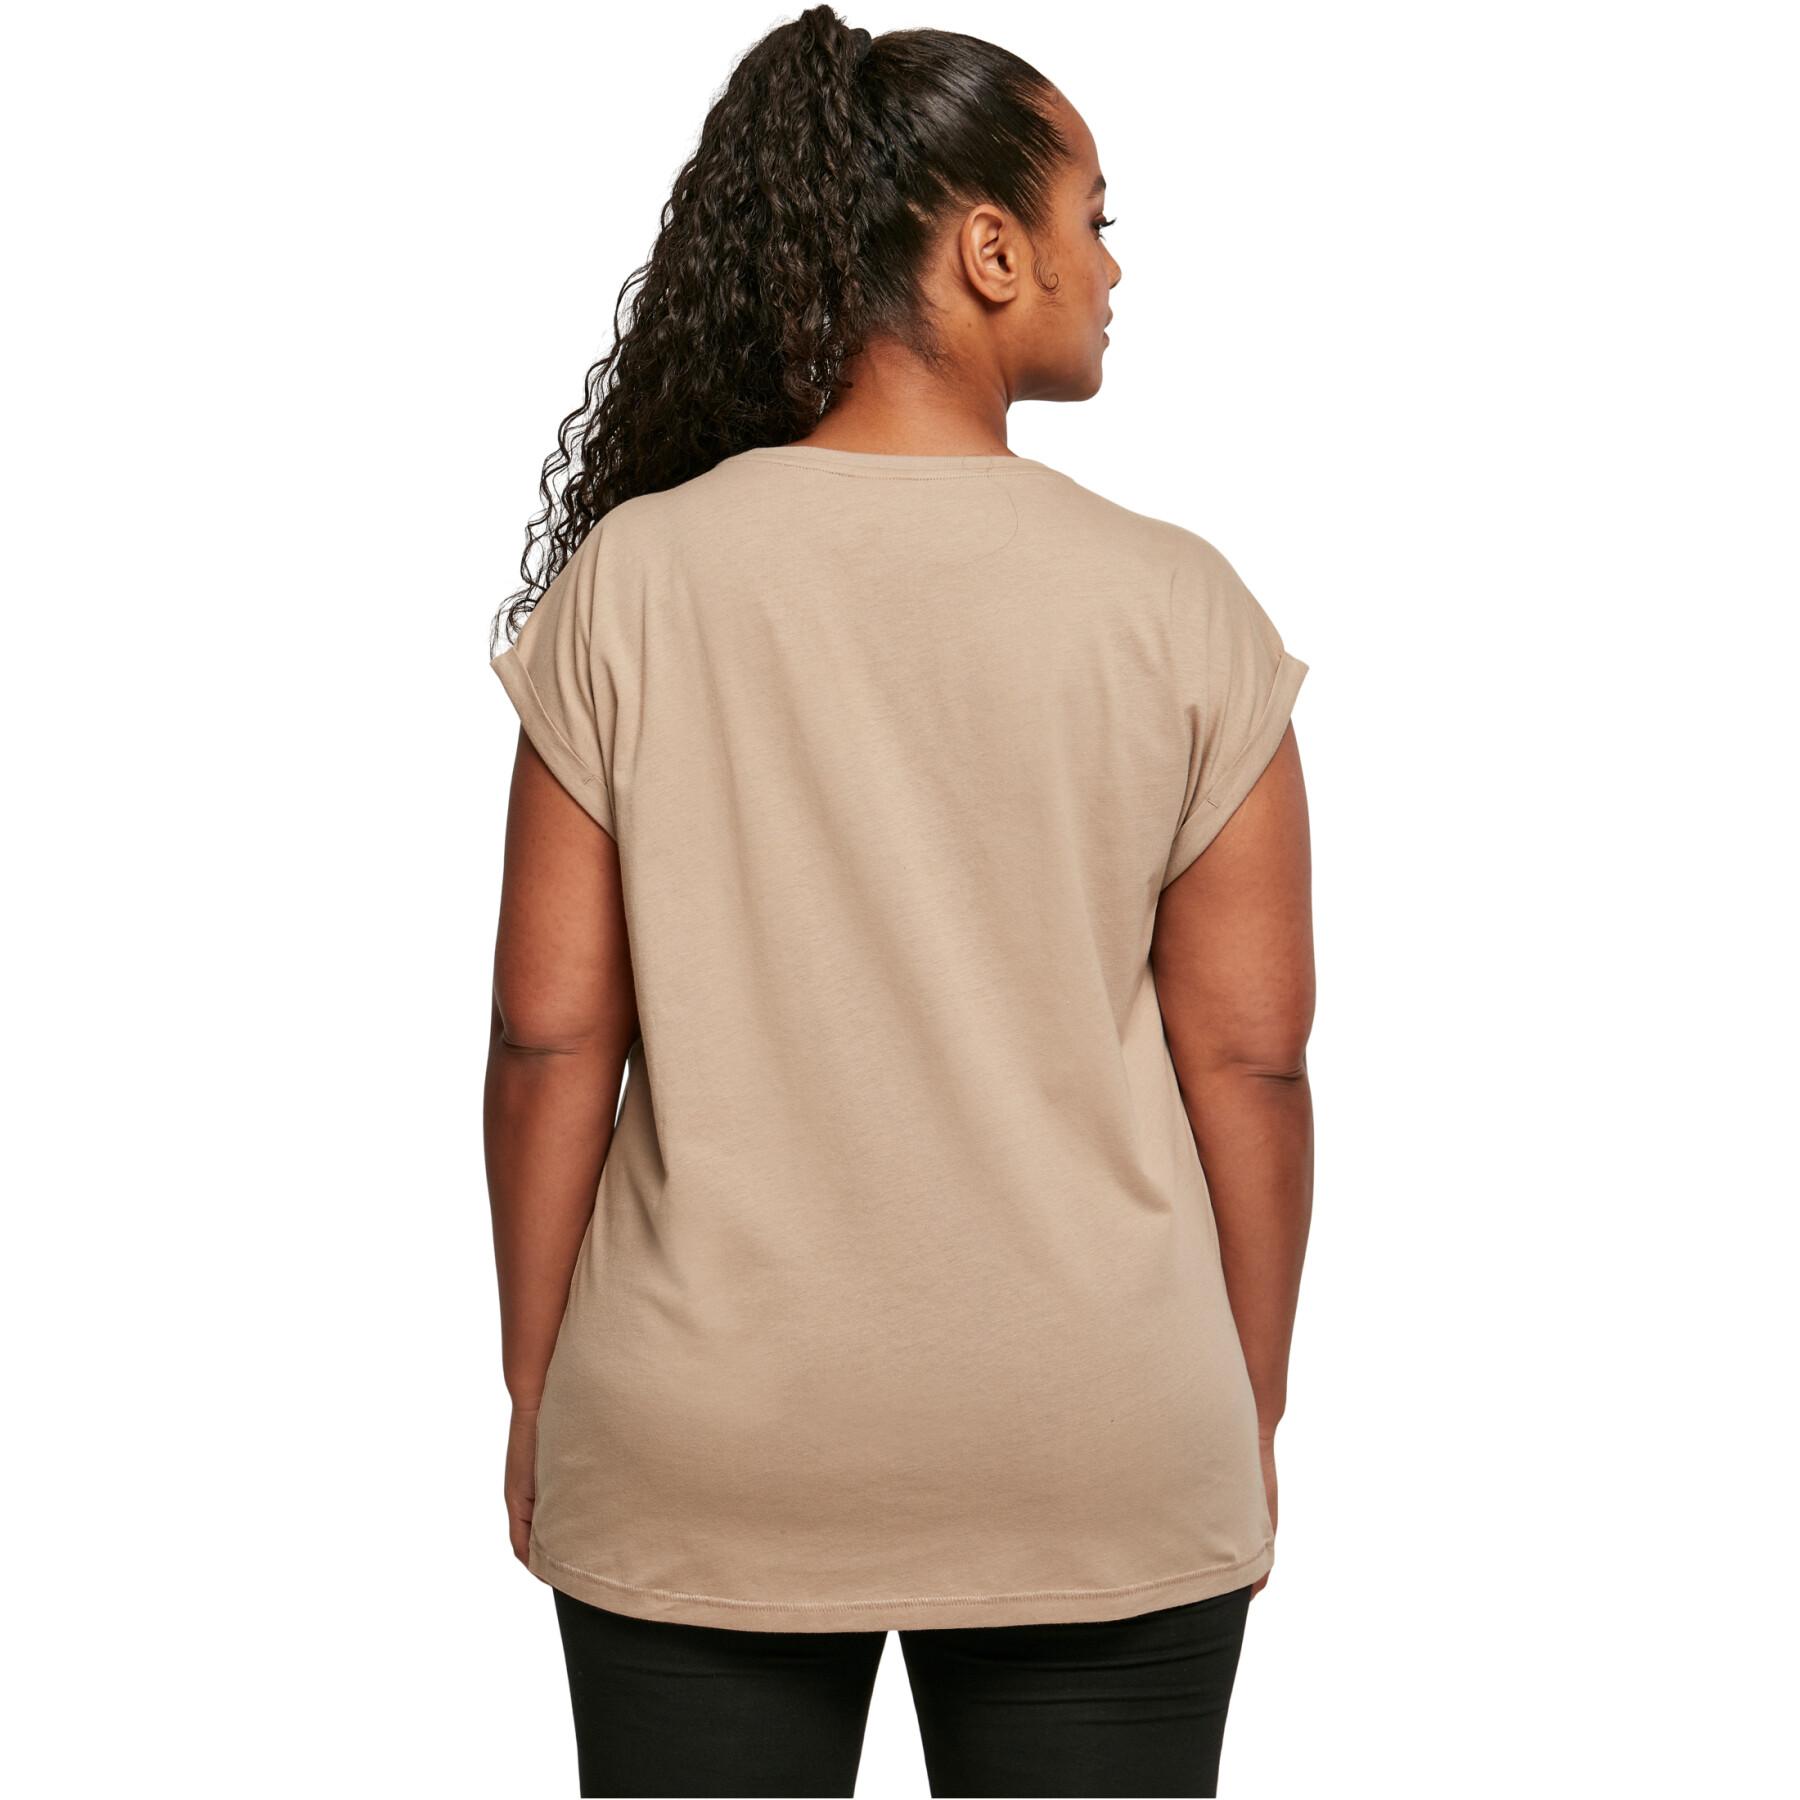 Dames-T-shirt Urban Classics Extended Shoulder